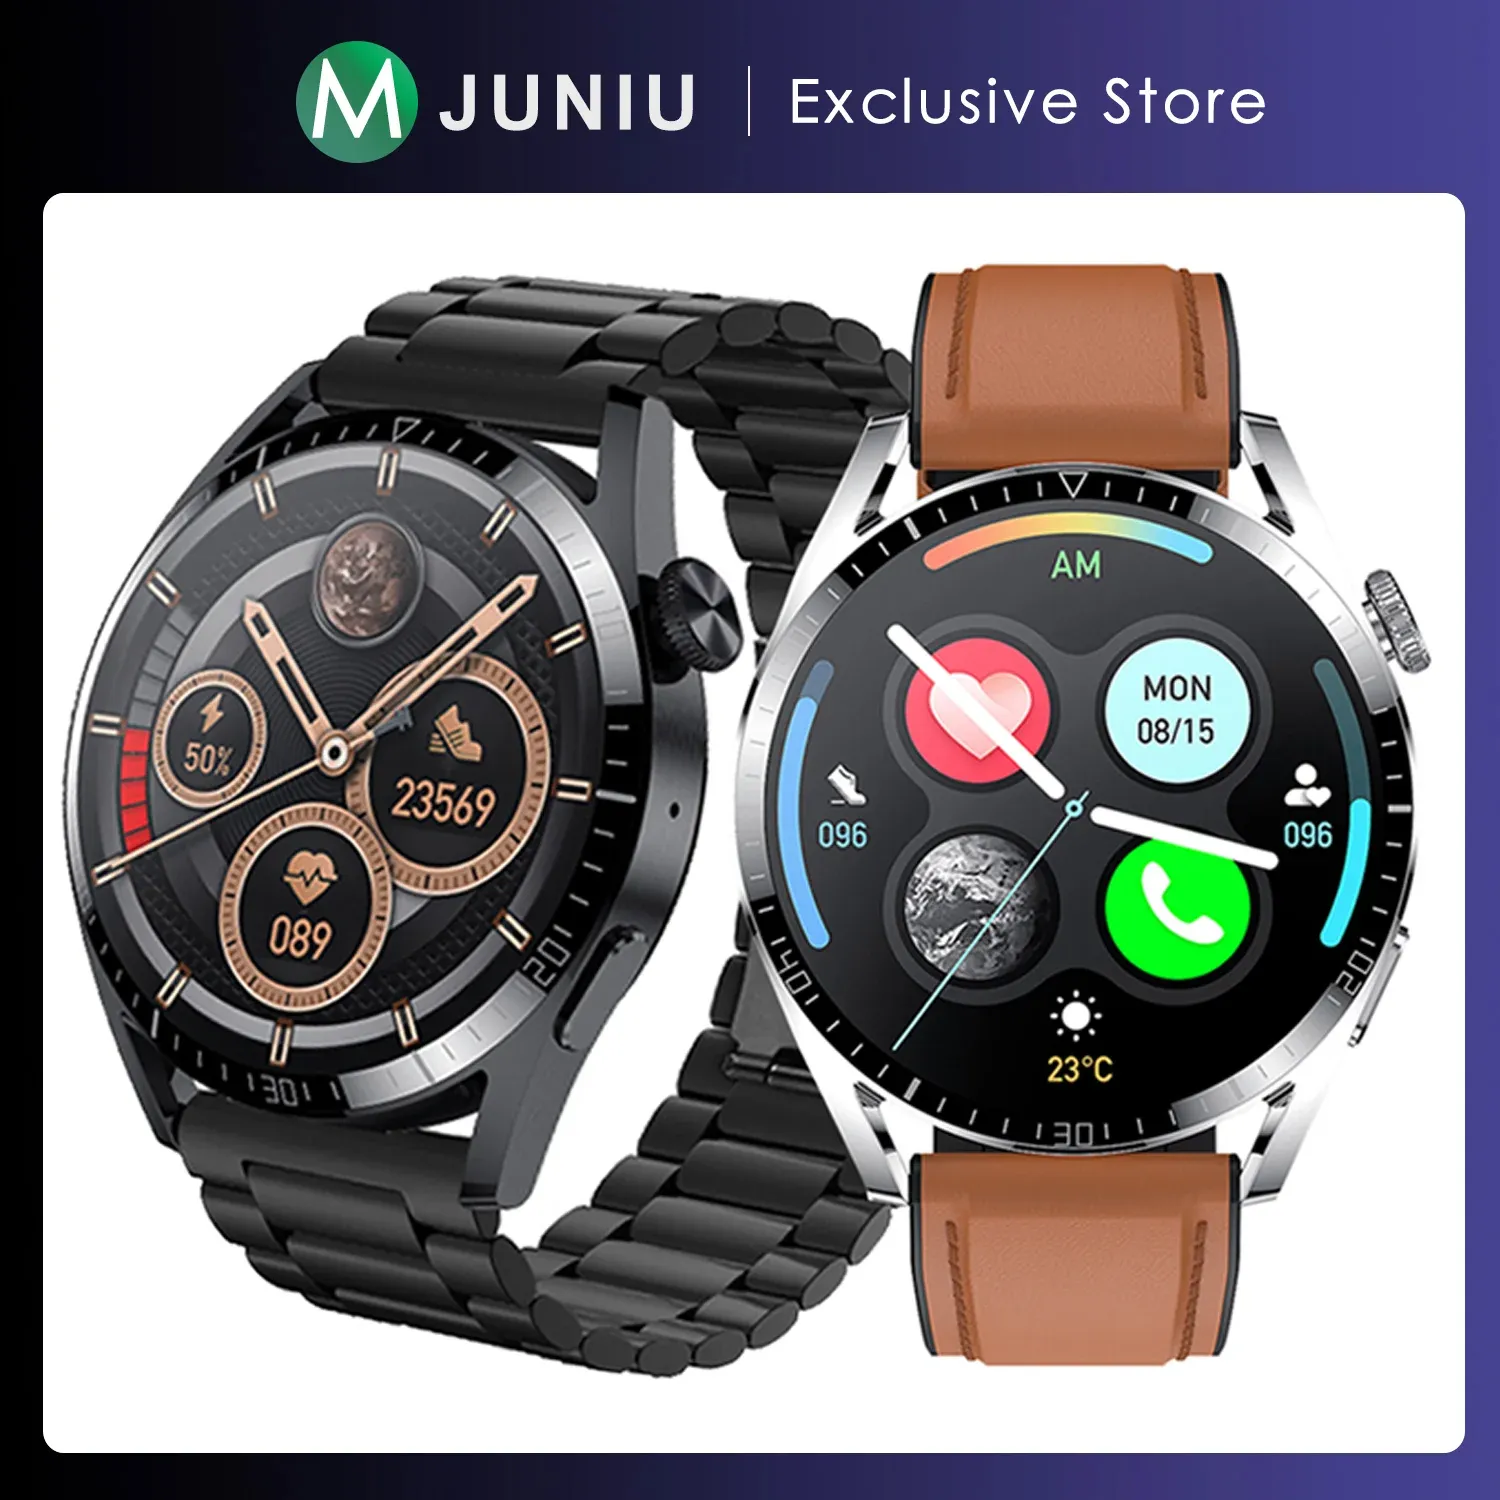 Regardez Smart Watch Men 1.41 pouces HD Écran Bluetooth appelle le chargeur sans fil Smartwatch NFC Care Cate Ressage Horying Pressure pour Huawei